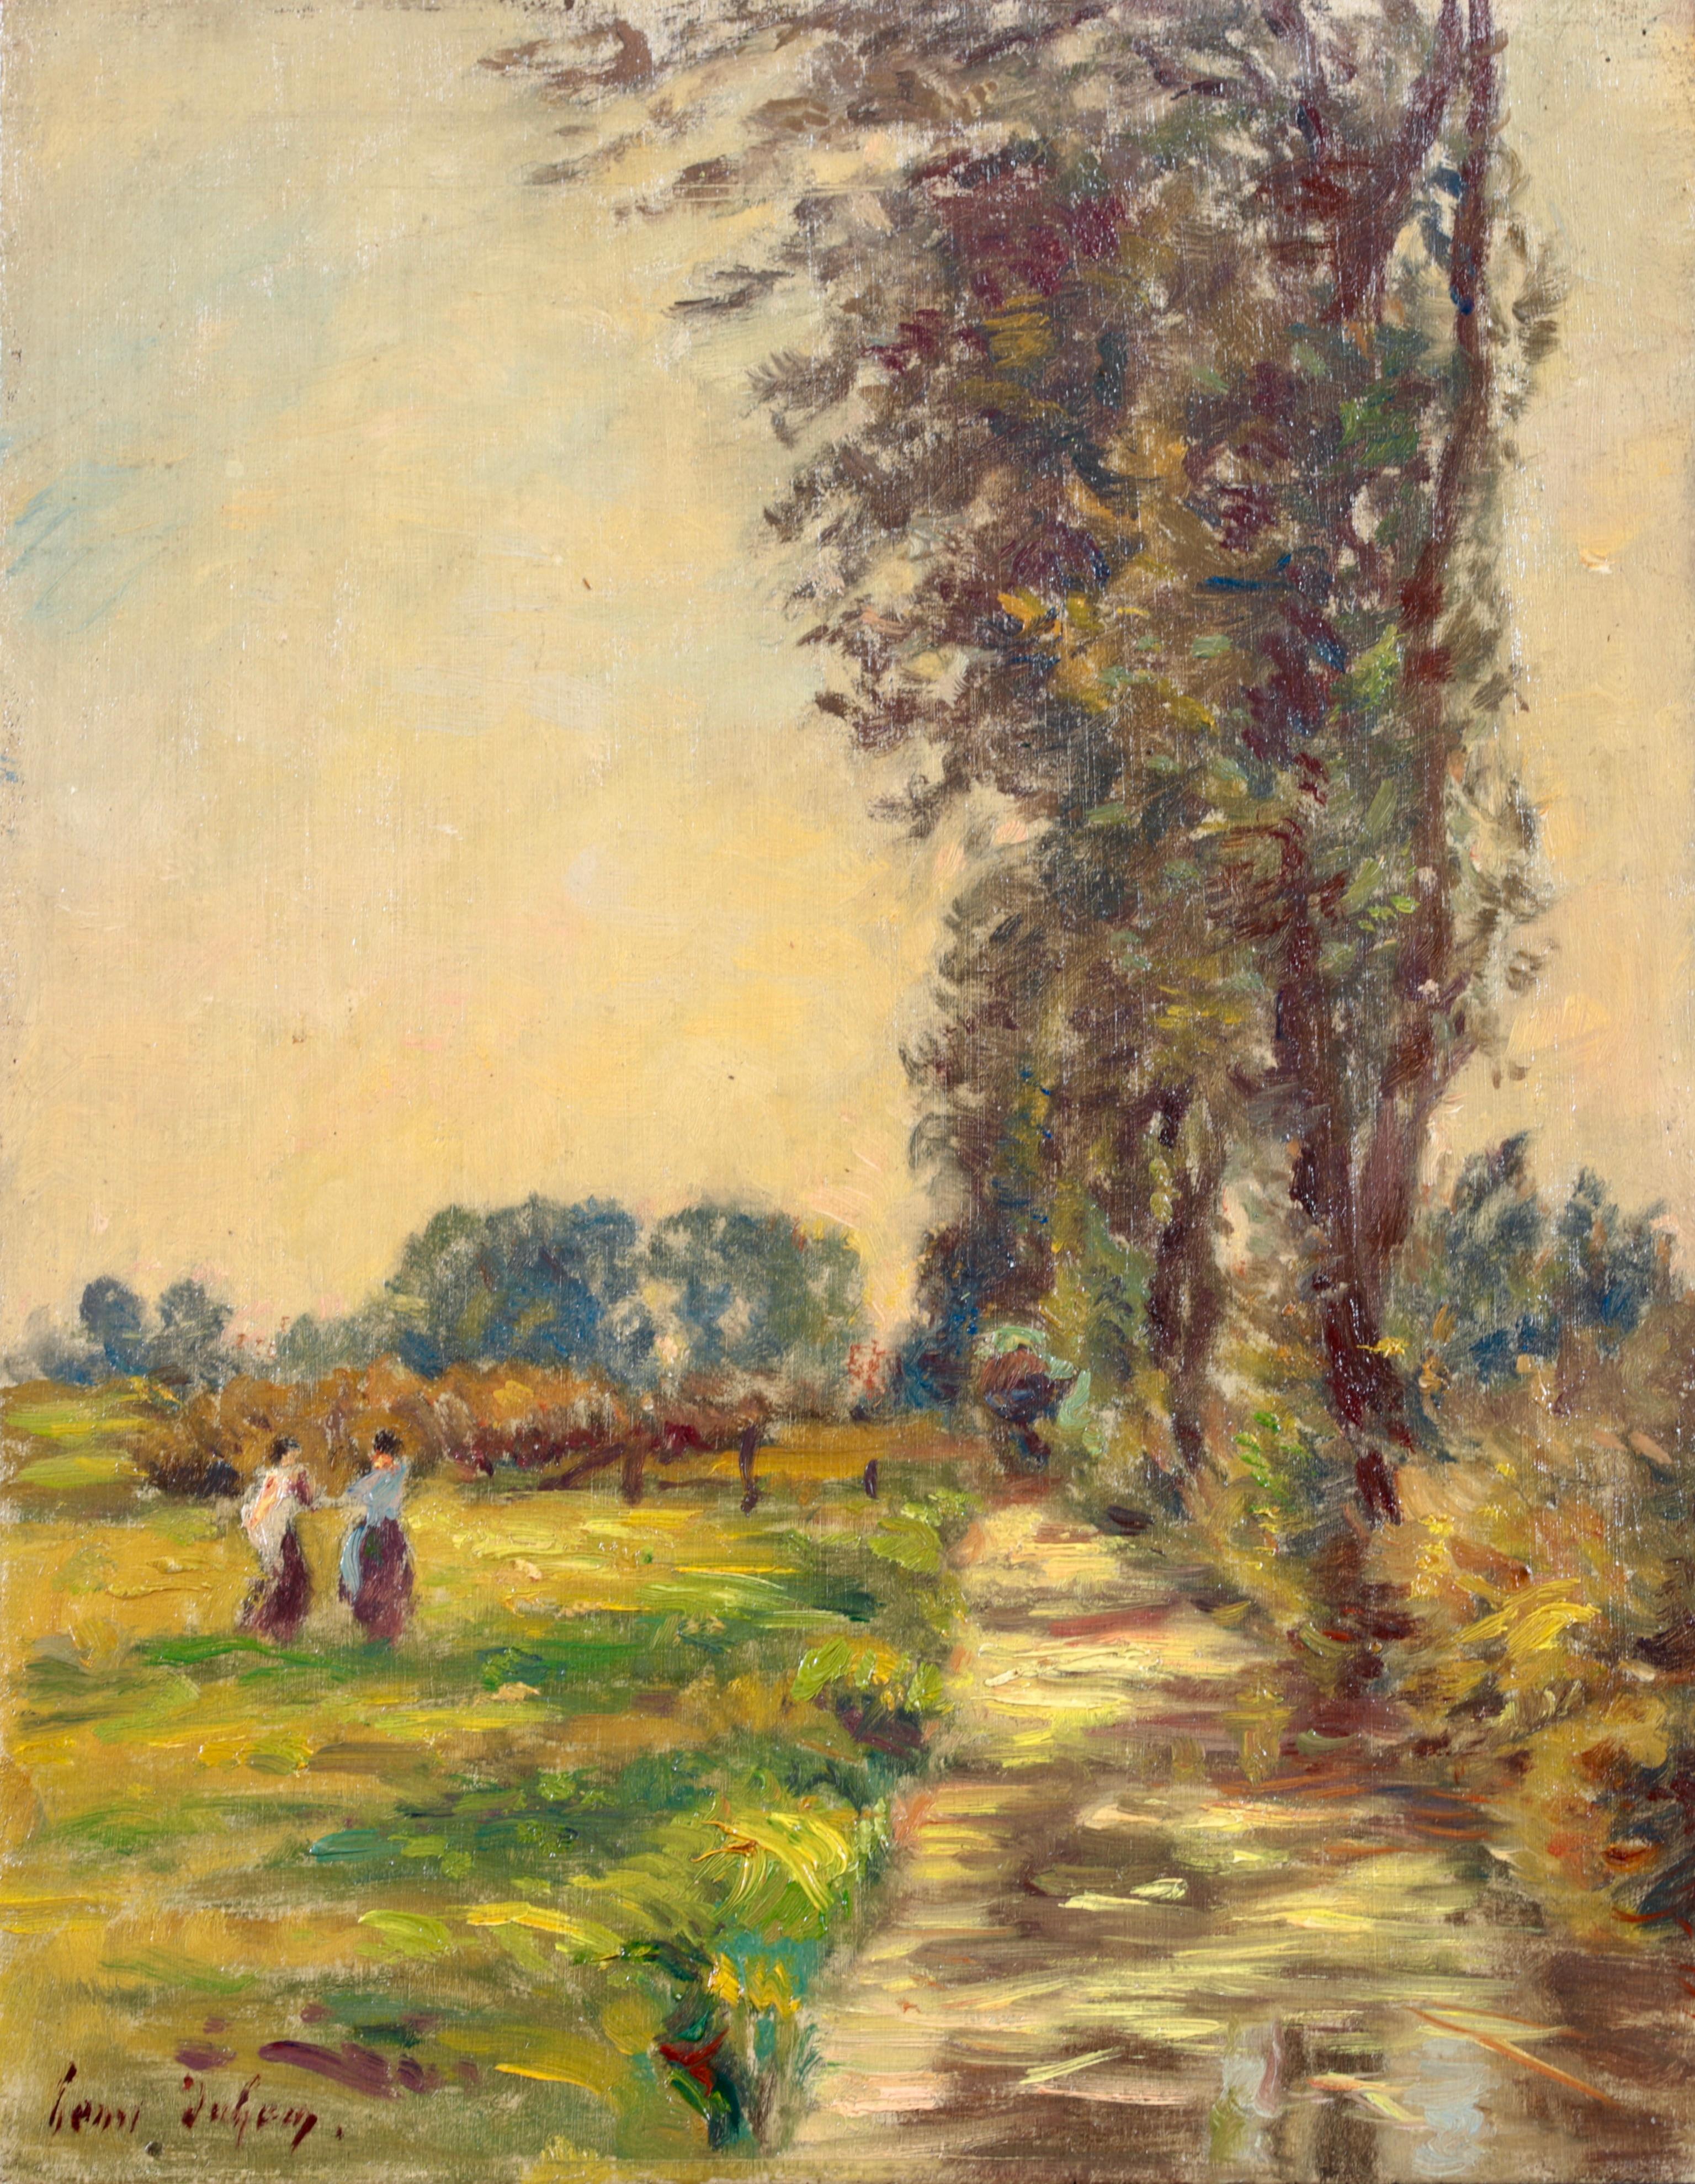 Figuren in einer Landschaft  Impressionistisches lgemlde, Figuren in Flusslandschaft von Henri Duhem